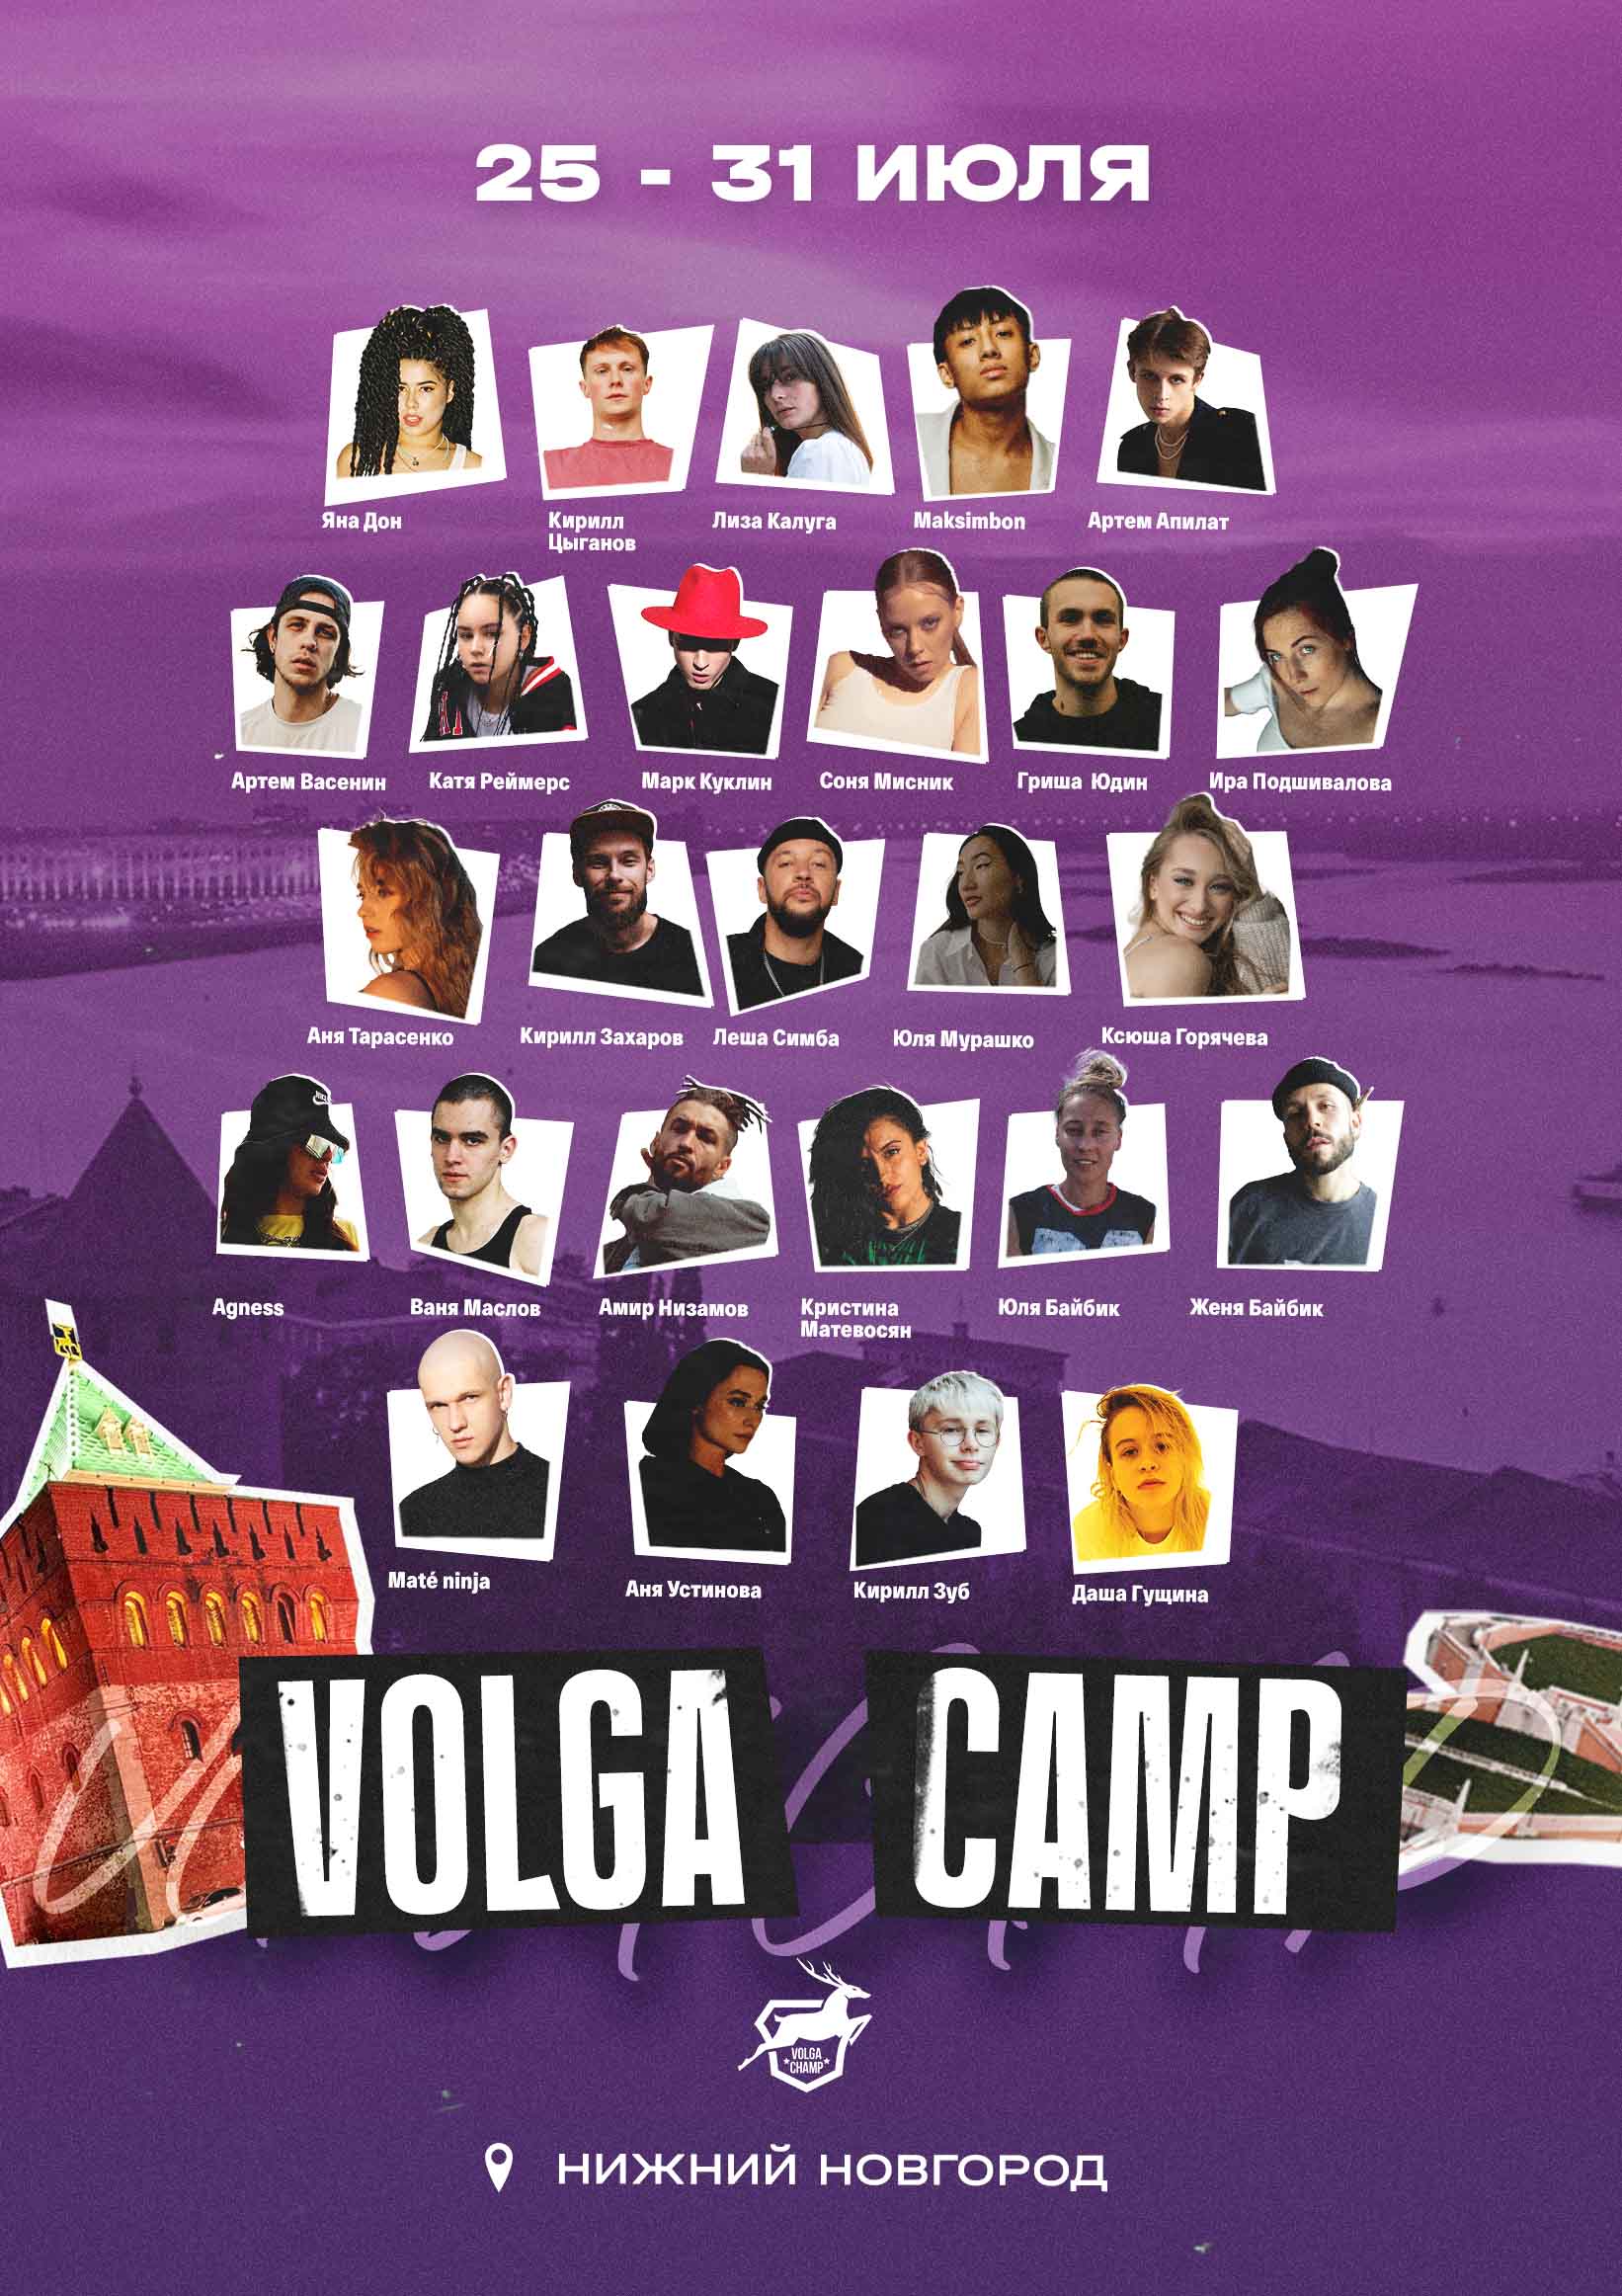 VOLGA CAMP